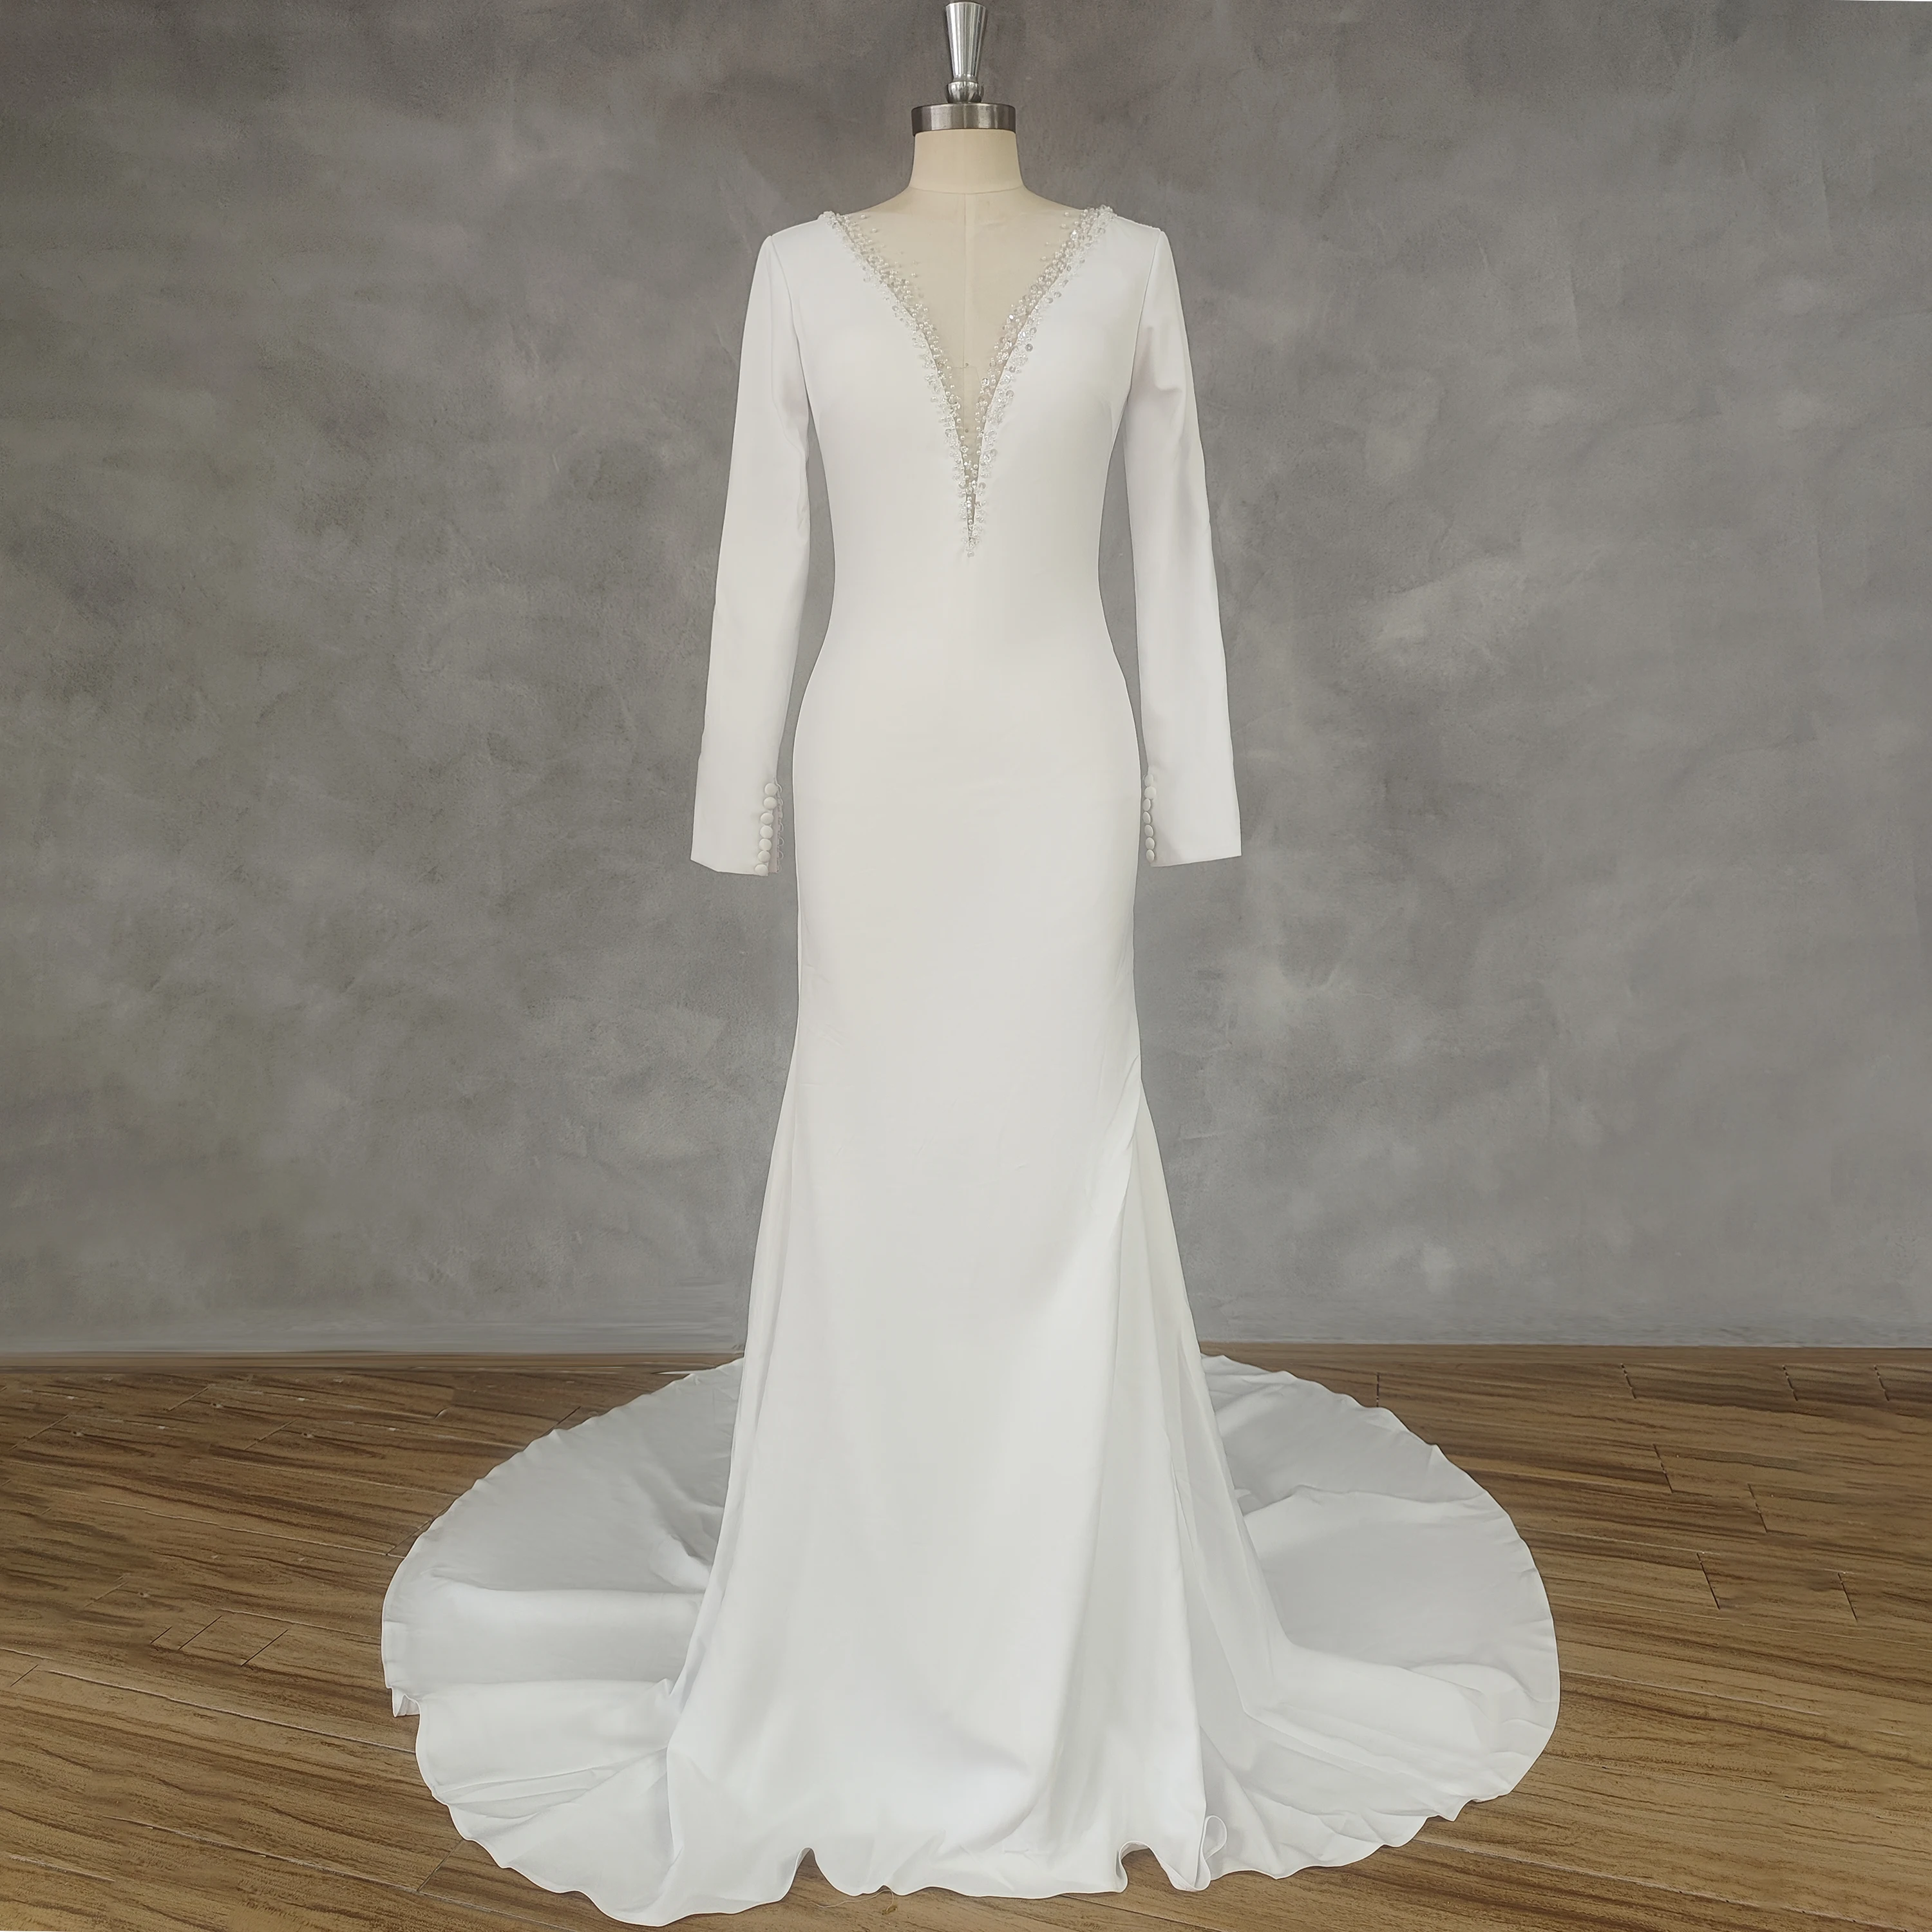 DIDEYTTAWL Реальное изображение Глубокий V-образный вырез, длинные рукава, креп, расшитый бисером, блестки, свадебное платье Русалки, свадебное платье со шлейфом на пуговицах сзади